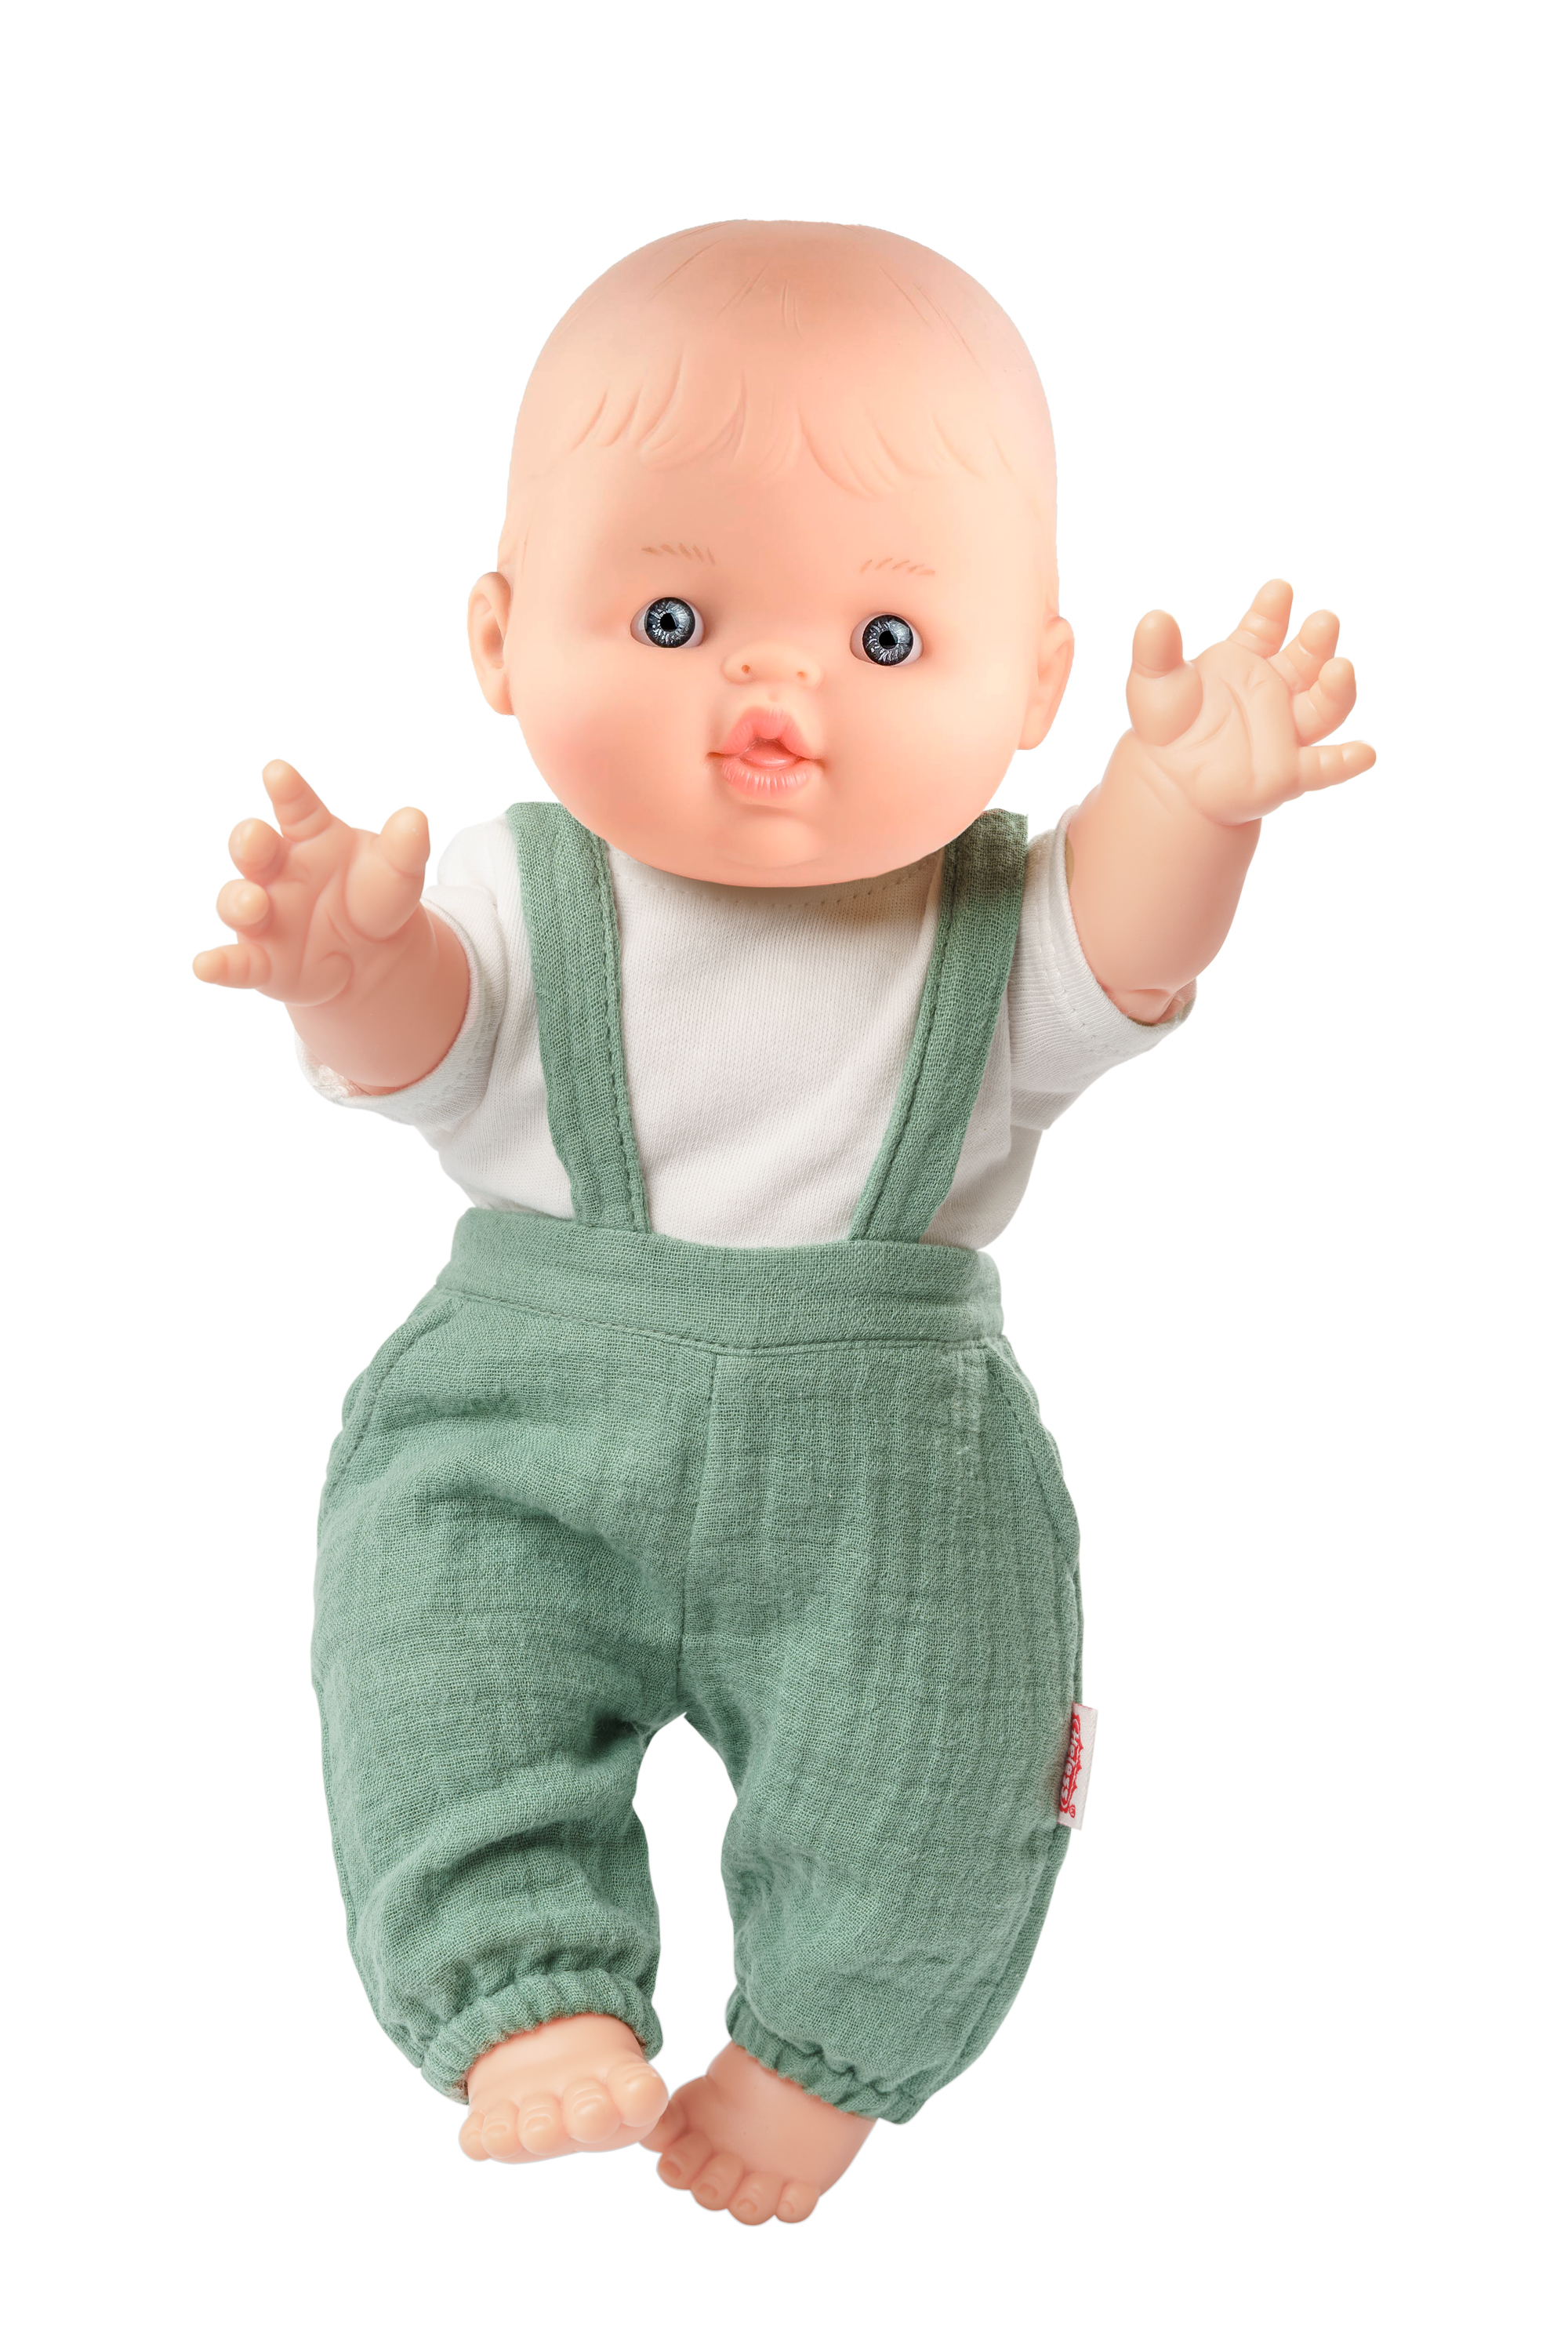 Set: Puppe mit Bio-Latzhose, salbeigrün, Junge, 34 cm